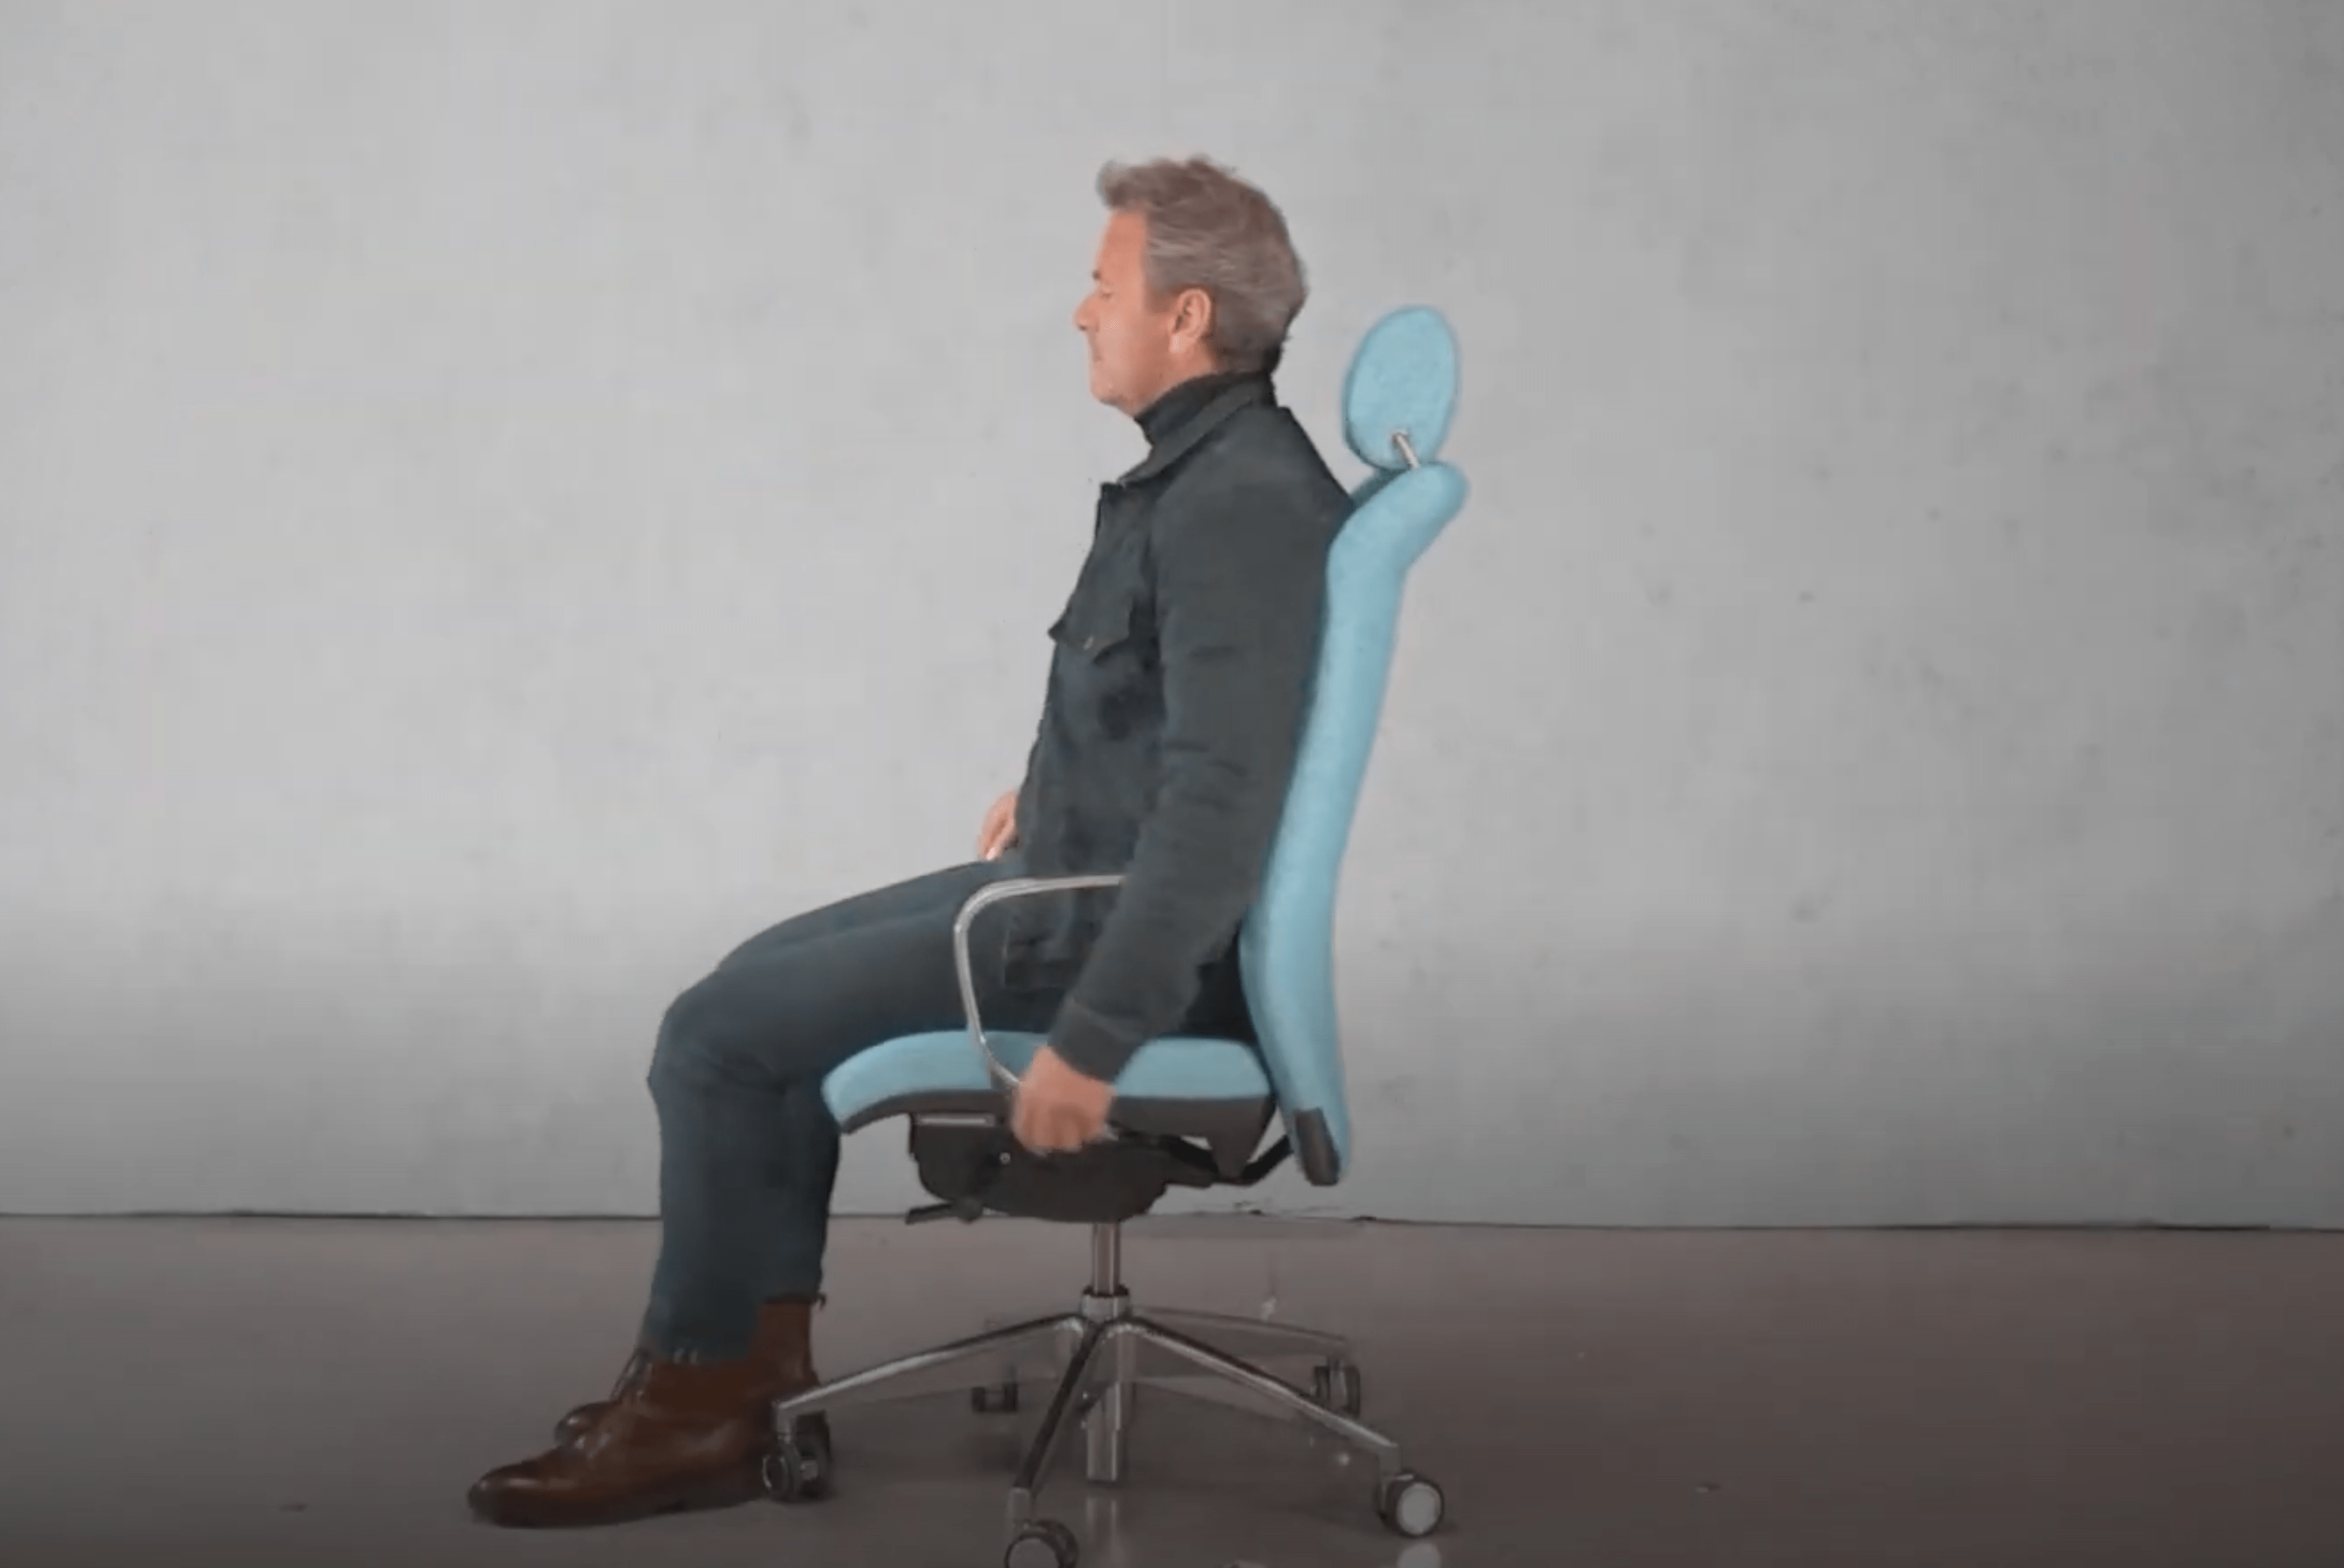 Options de soutien du dos et de chaise ergonomique avec soutien lombaire